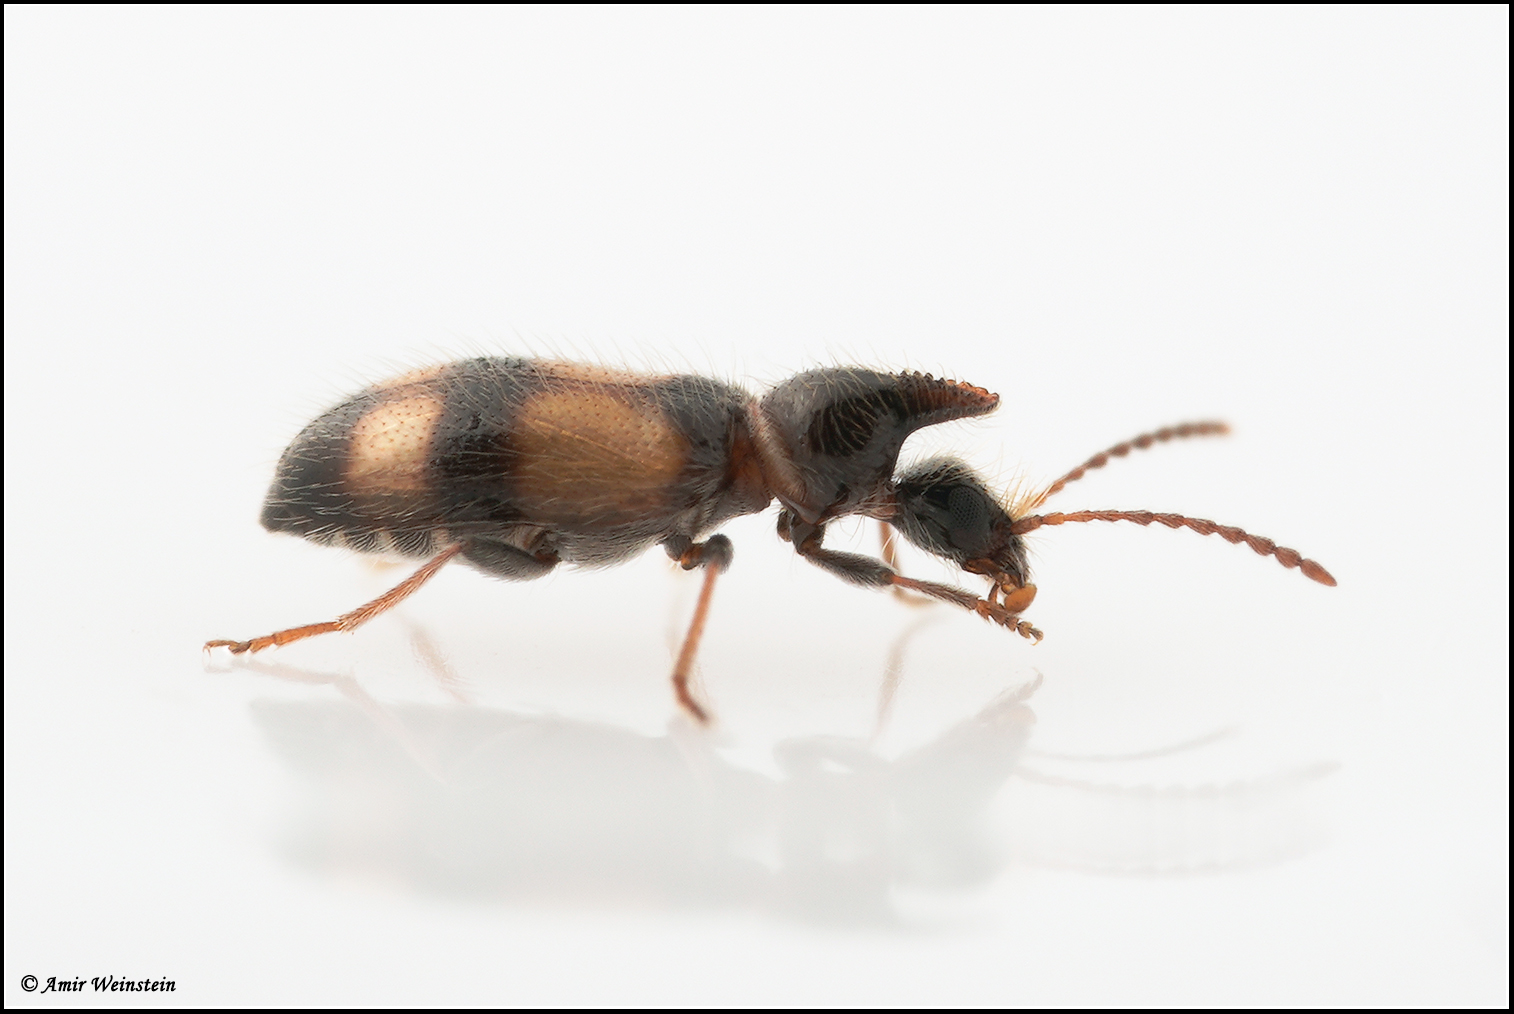 מתנמלת. שמה העברי של חיפושית המתחזה לנמלים וחיה במחיצתן. צילום: עמיר וינשטיין